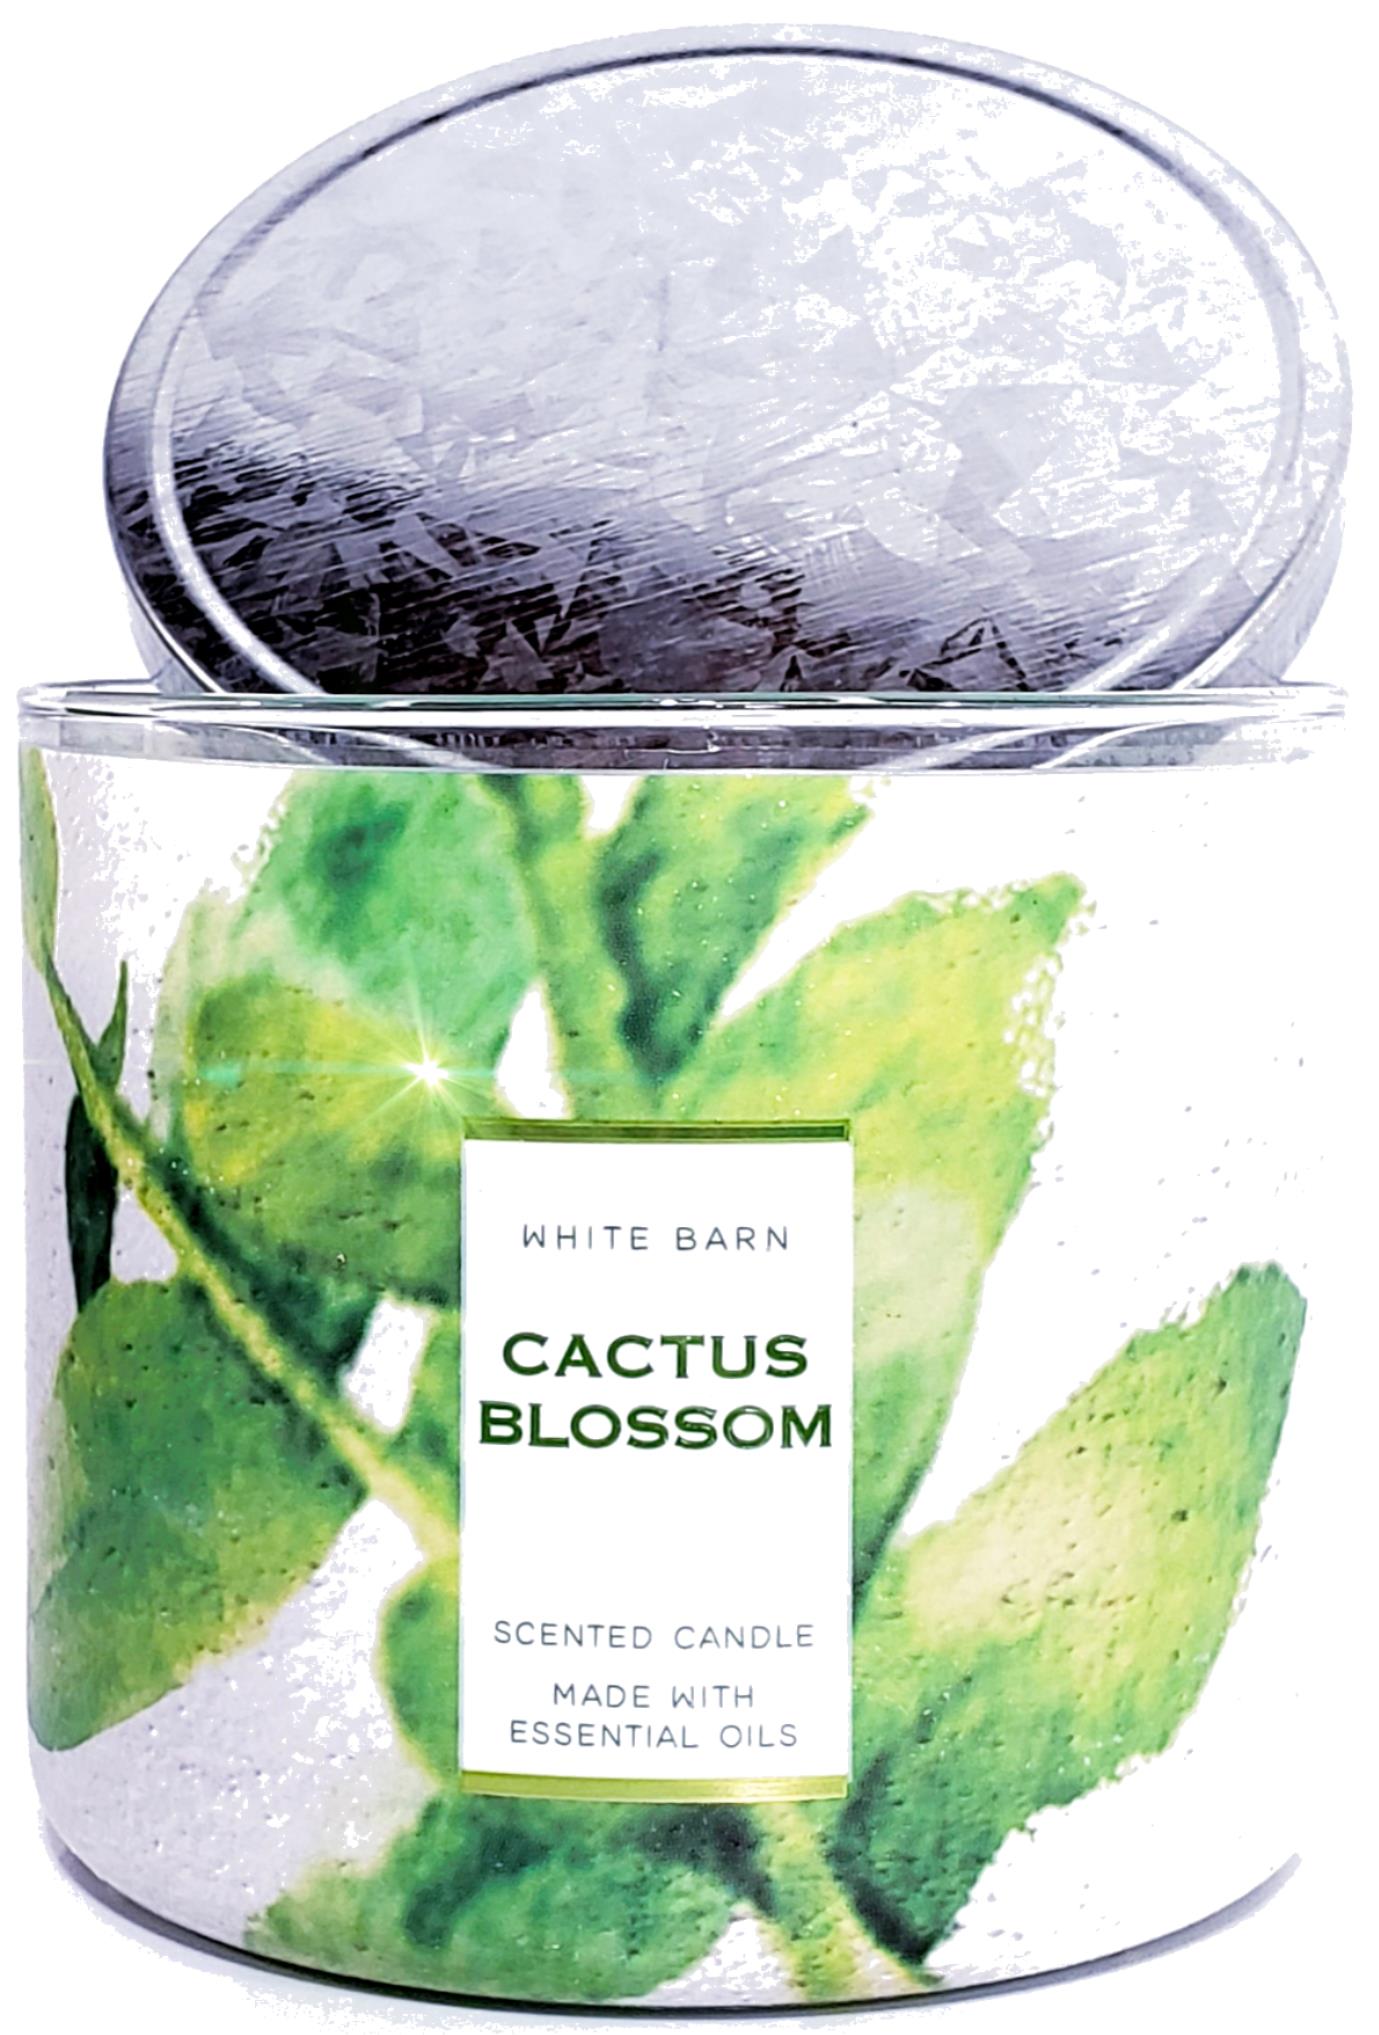 Cactus Blossom Bath And Body